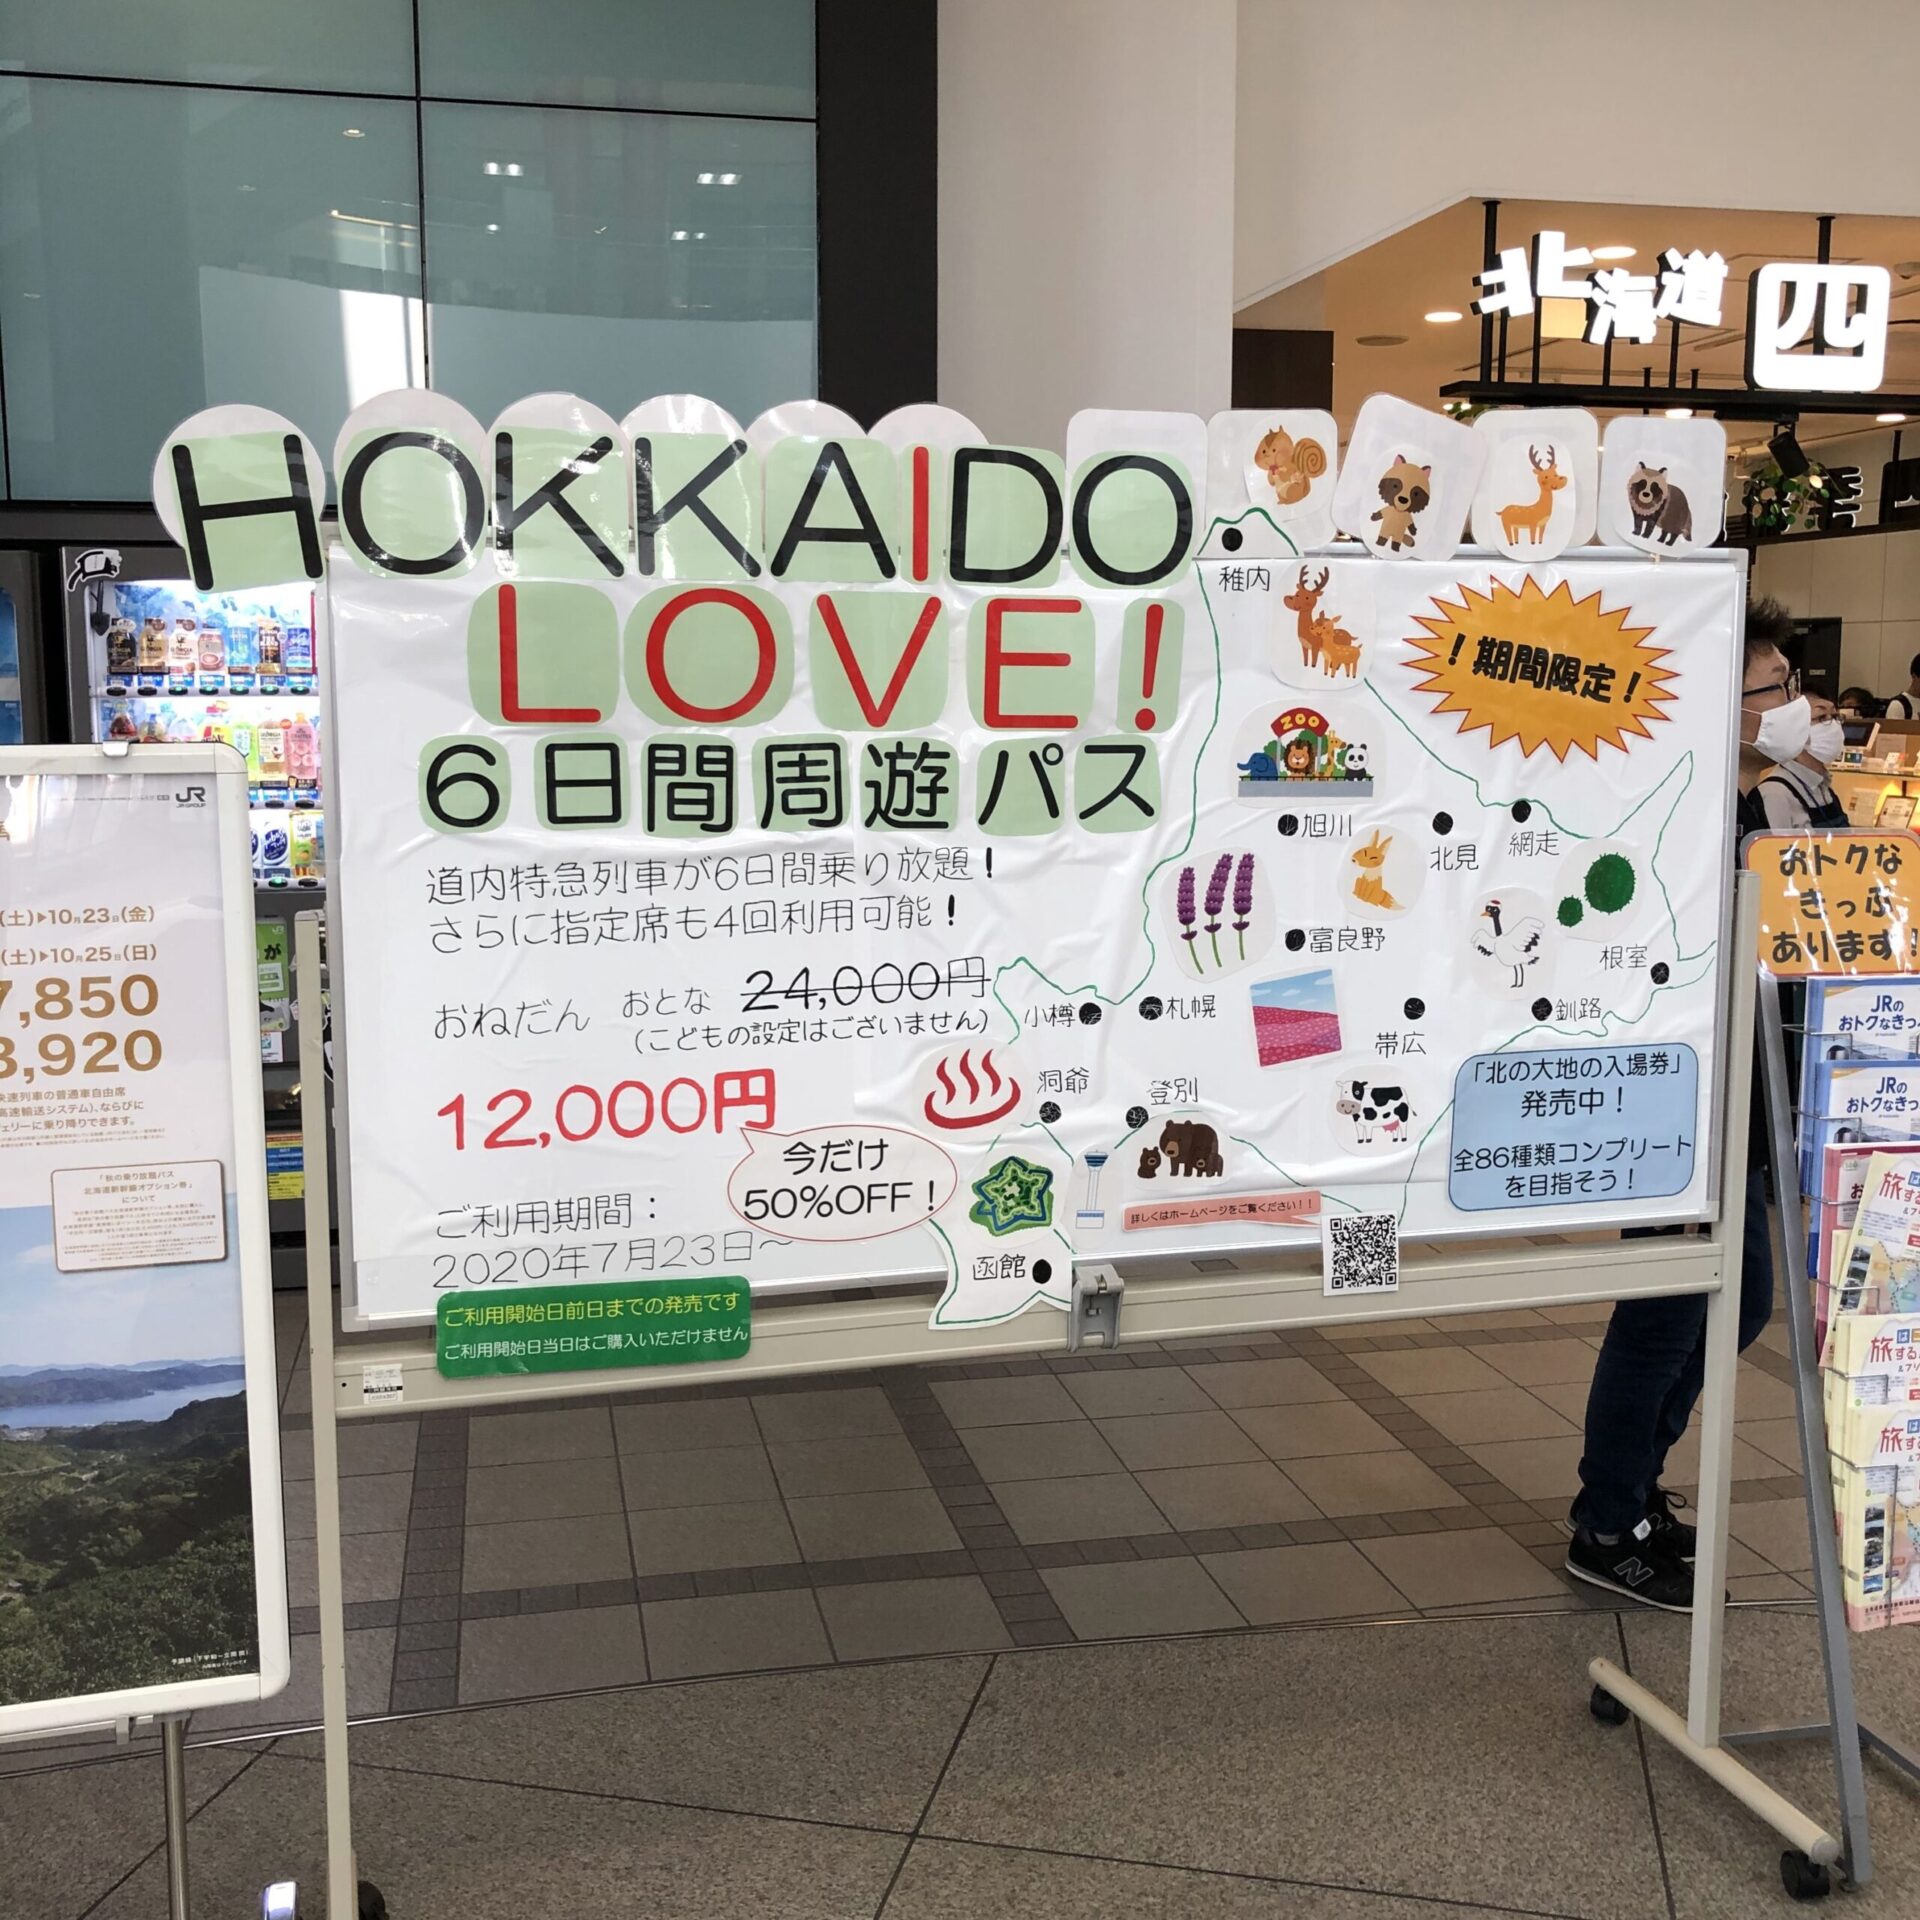 函館駅にあった北海道ラブパスの発売ボード